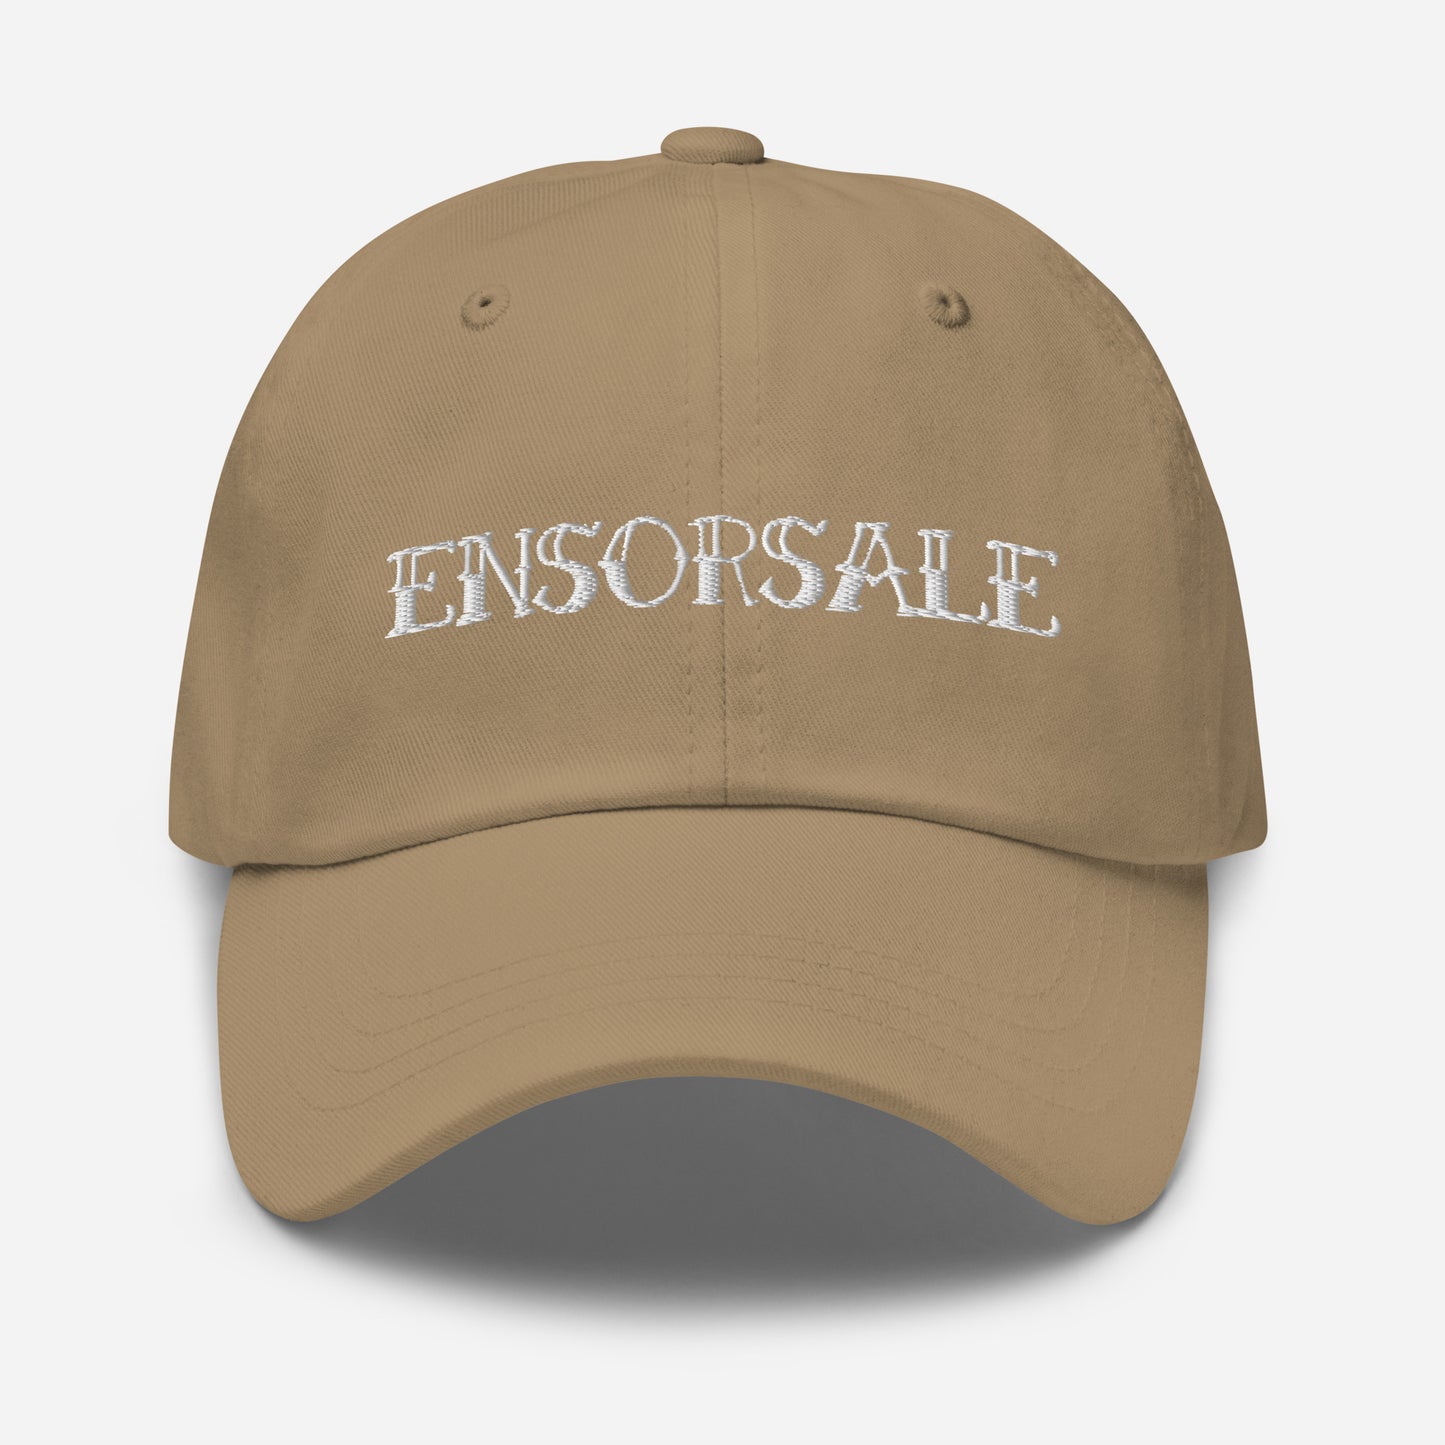 Ensorsale Original Logo Dad hat